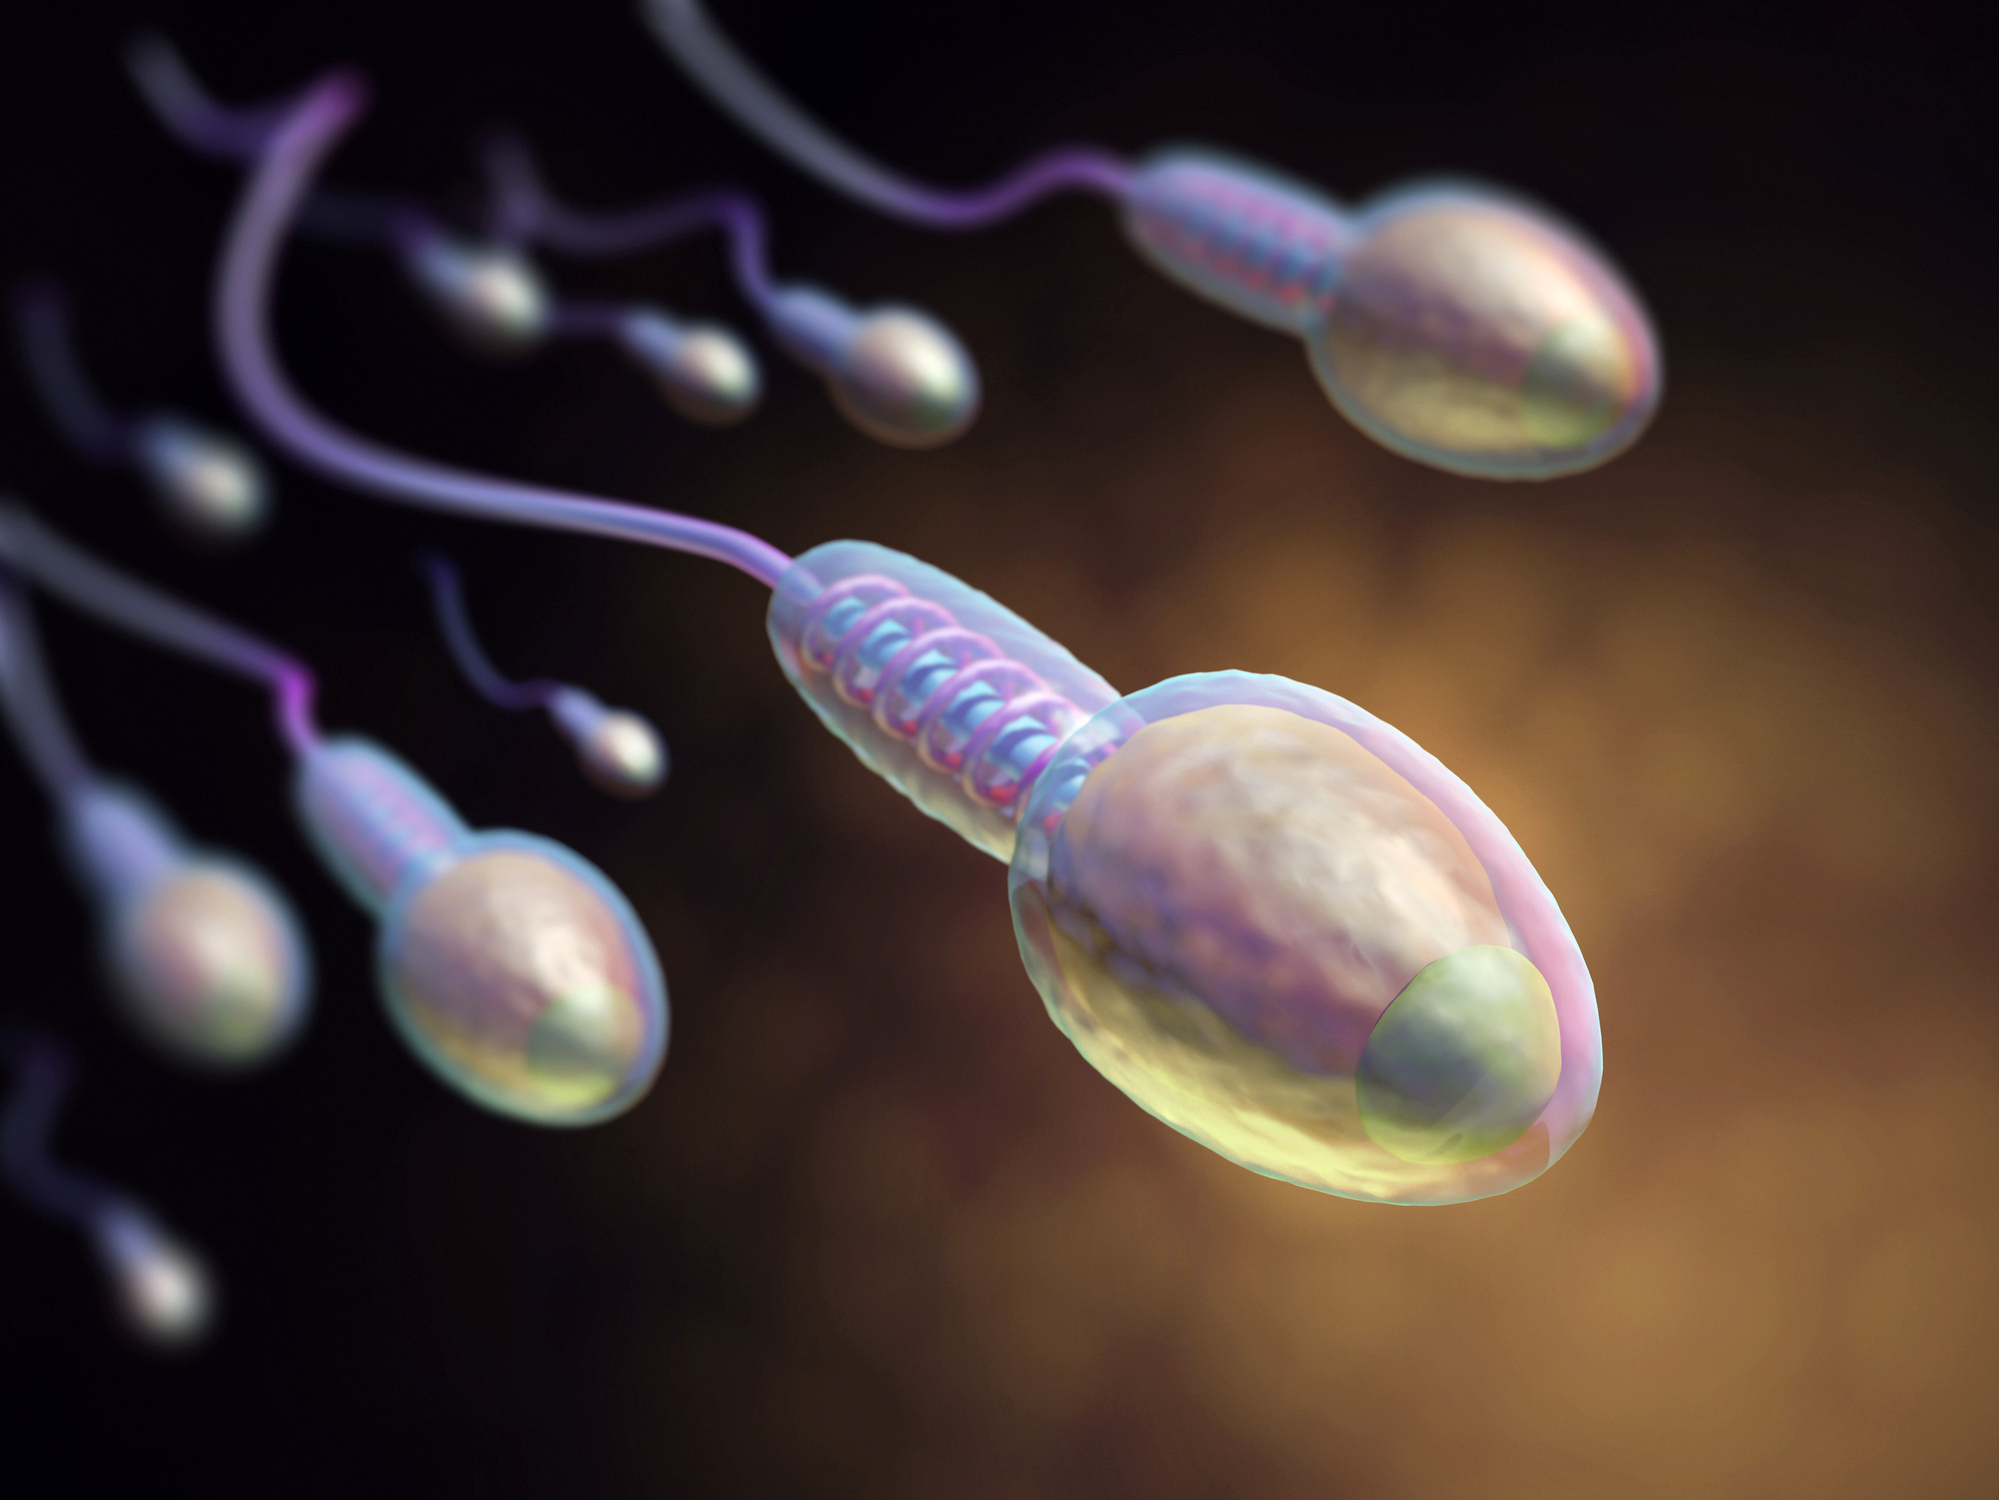 мужская сперма полезна женскому организму фото 117